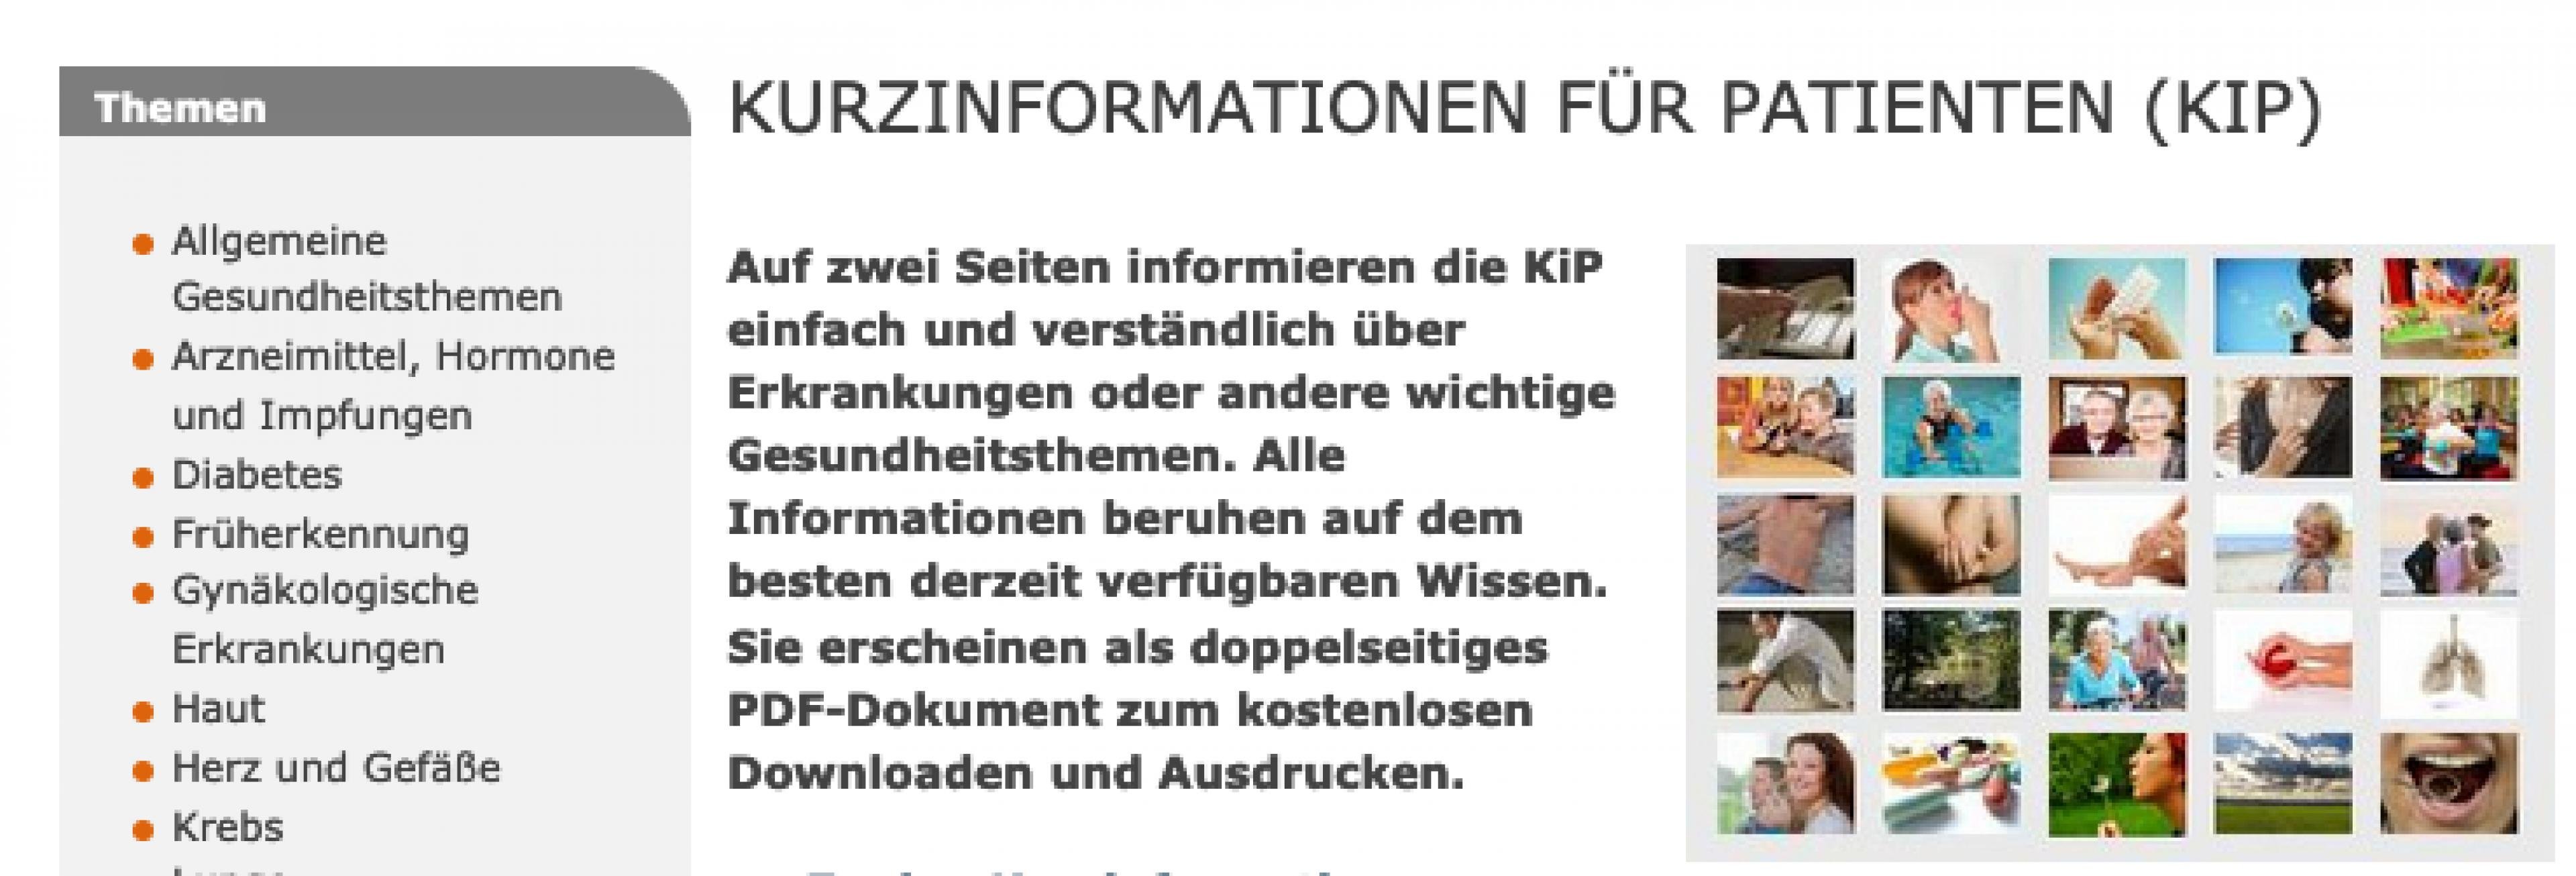 Screenshot der Website www.patienten-information.de – Kurzinformationen für Patienten (KIP). Zu sehen ist der Startbildschirm mit einer kurzen Erklärung und Navigationselementen